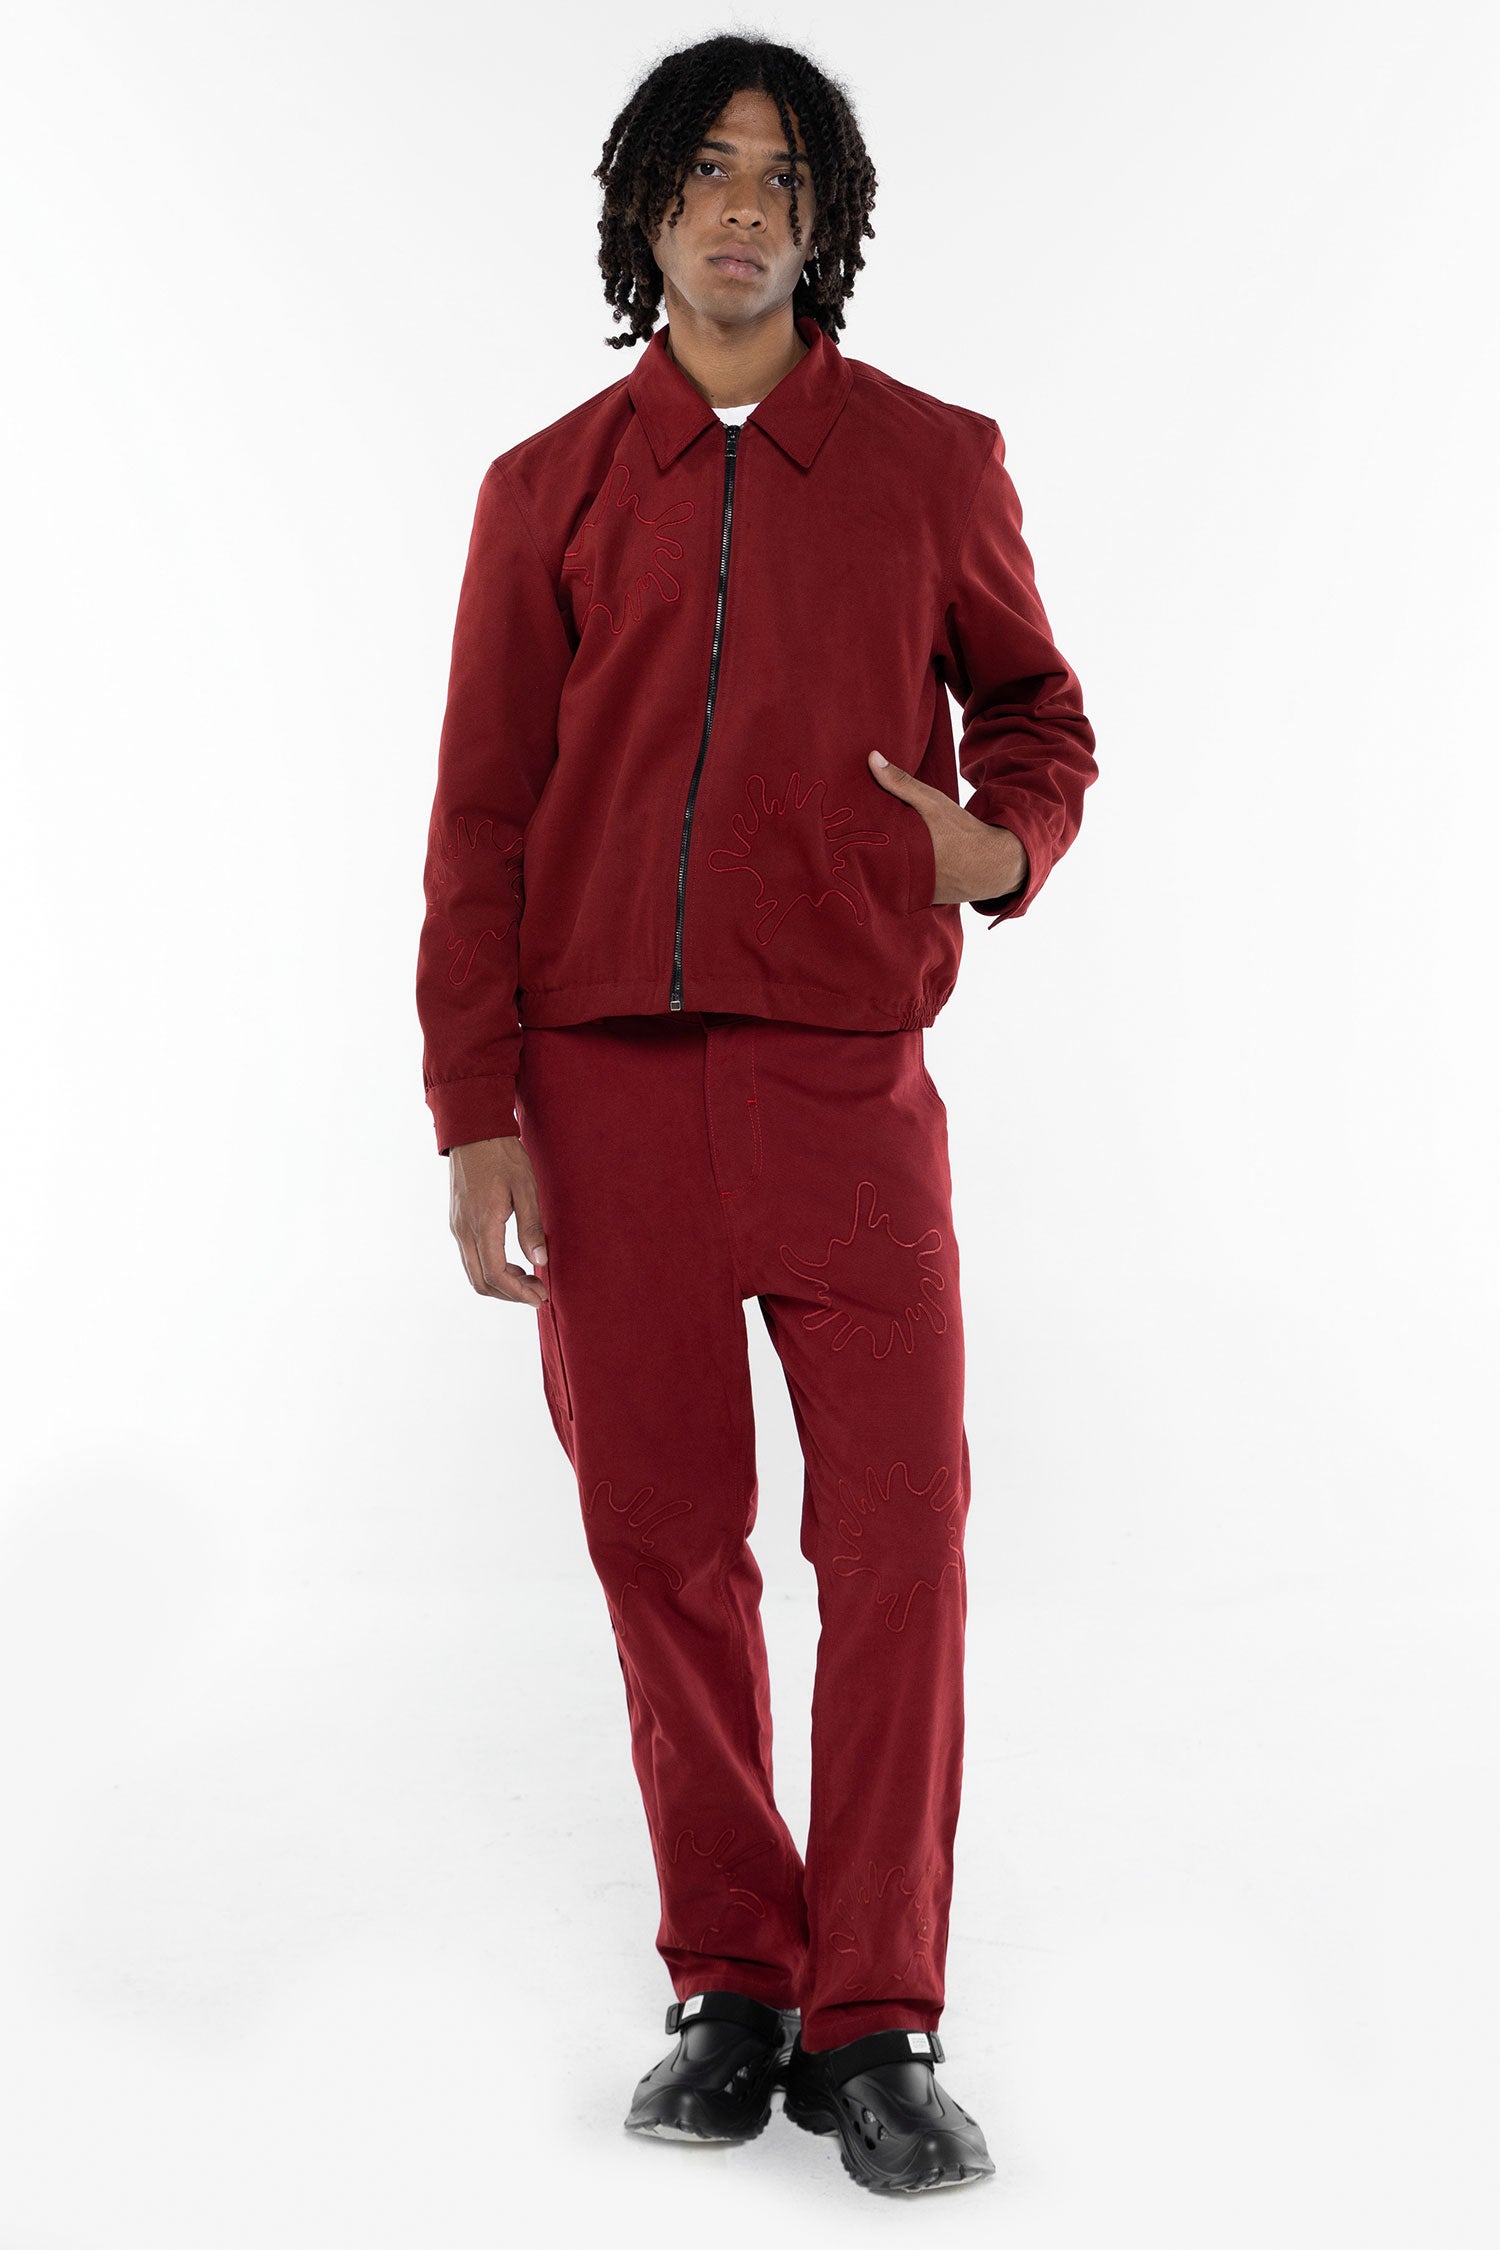 giacca rossa completo con pantalone